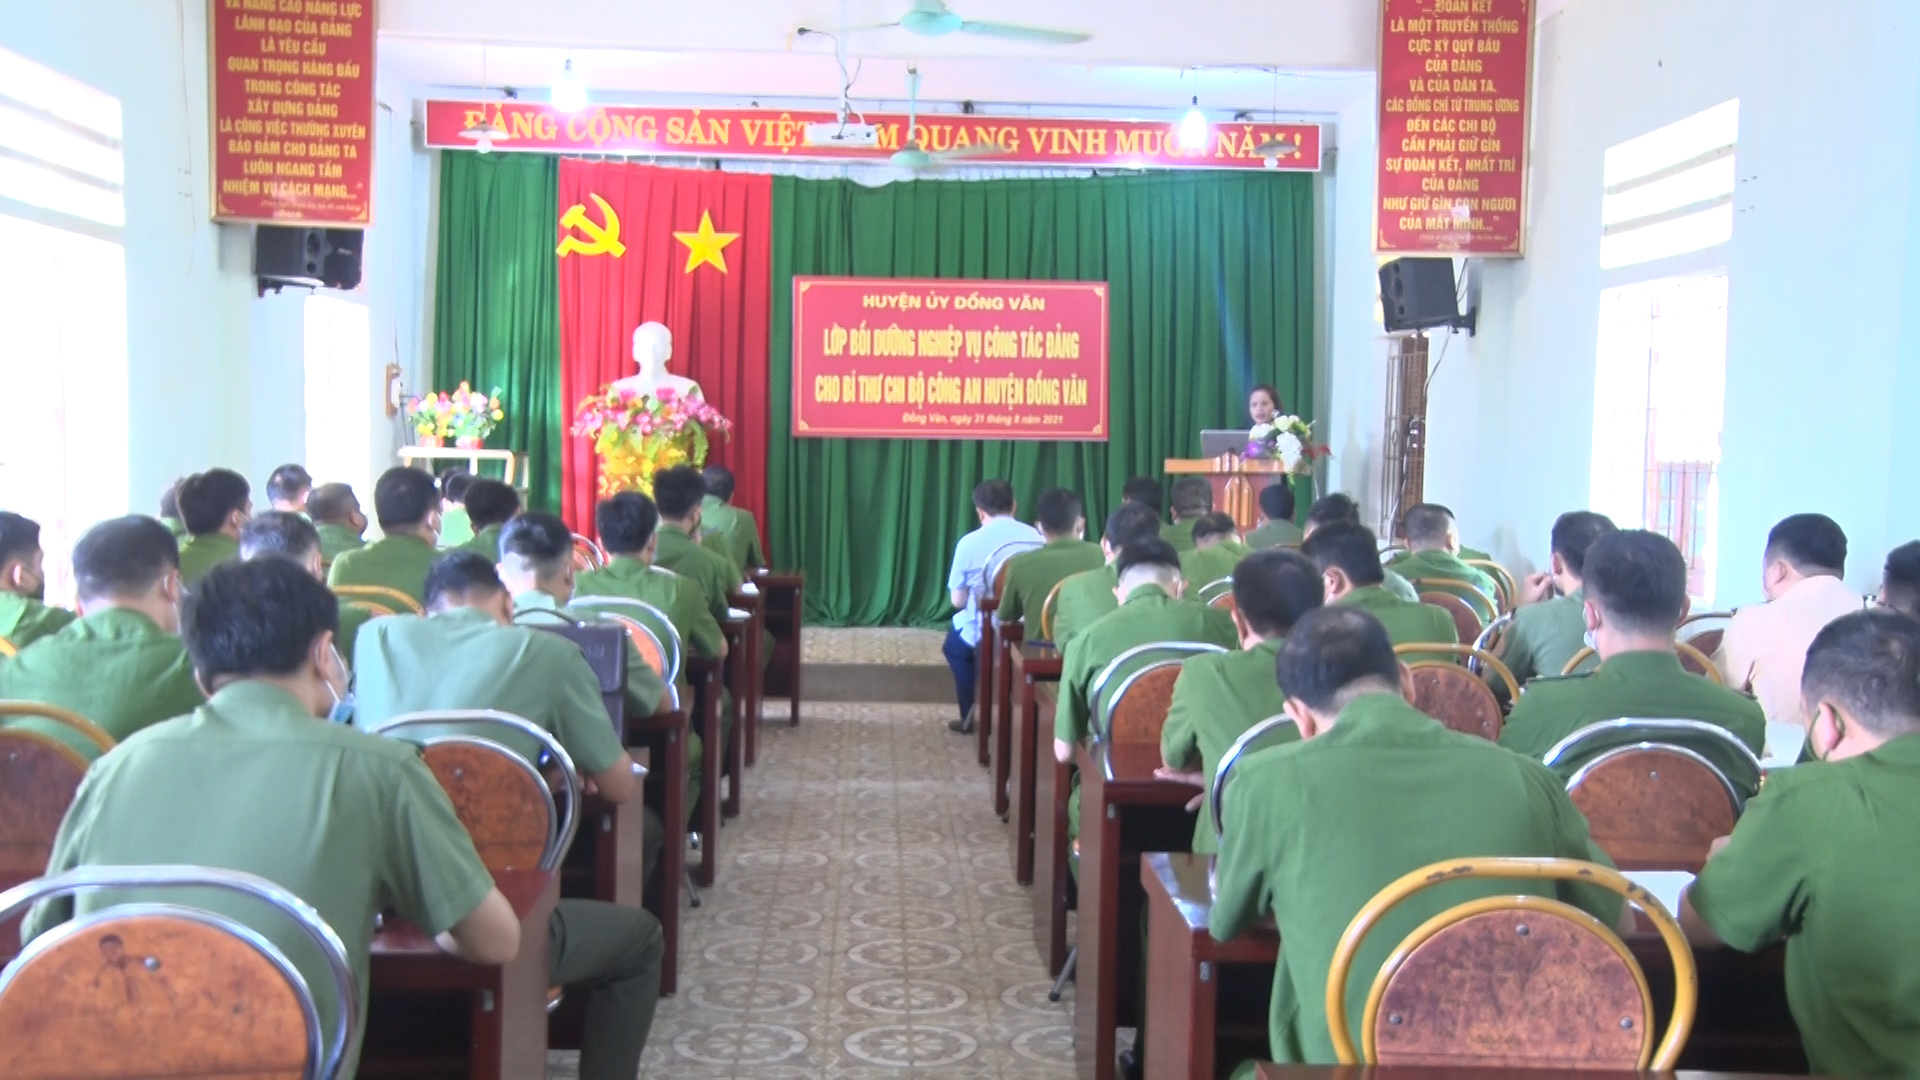 Lớp bồi dưỡng nghiệp vụ công tác Đảng cho Bí thư chi bộ trong lực lượng Công an huyện Đồng Văn